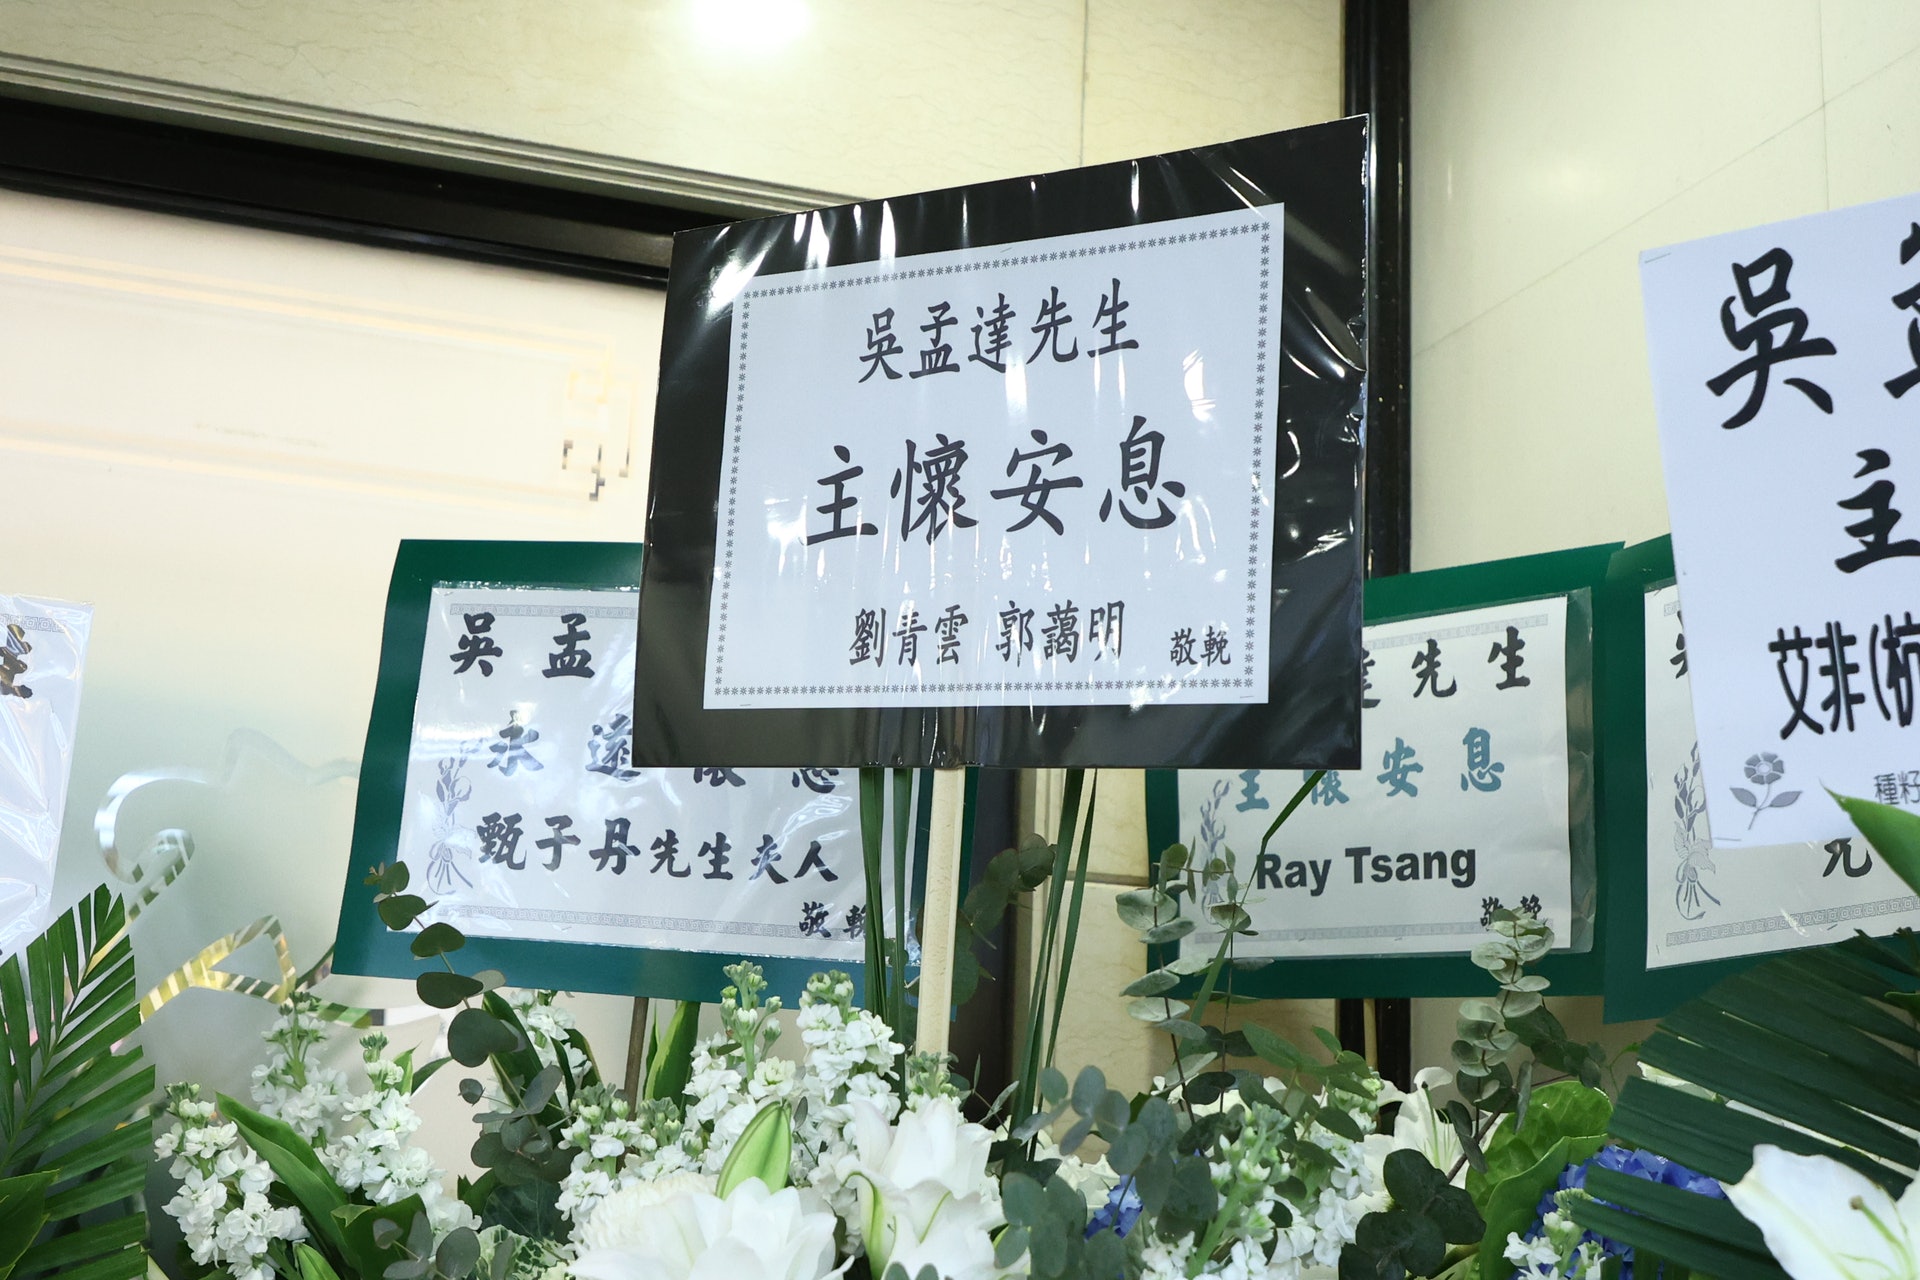 刘青云郭蔼明夫妇也送花圈到灵堂代表心意向吴孟达作出最后致敬。